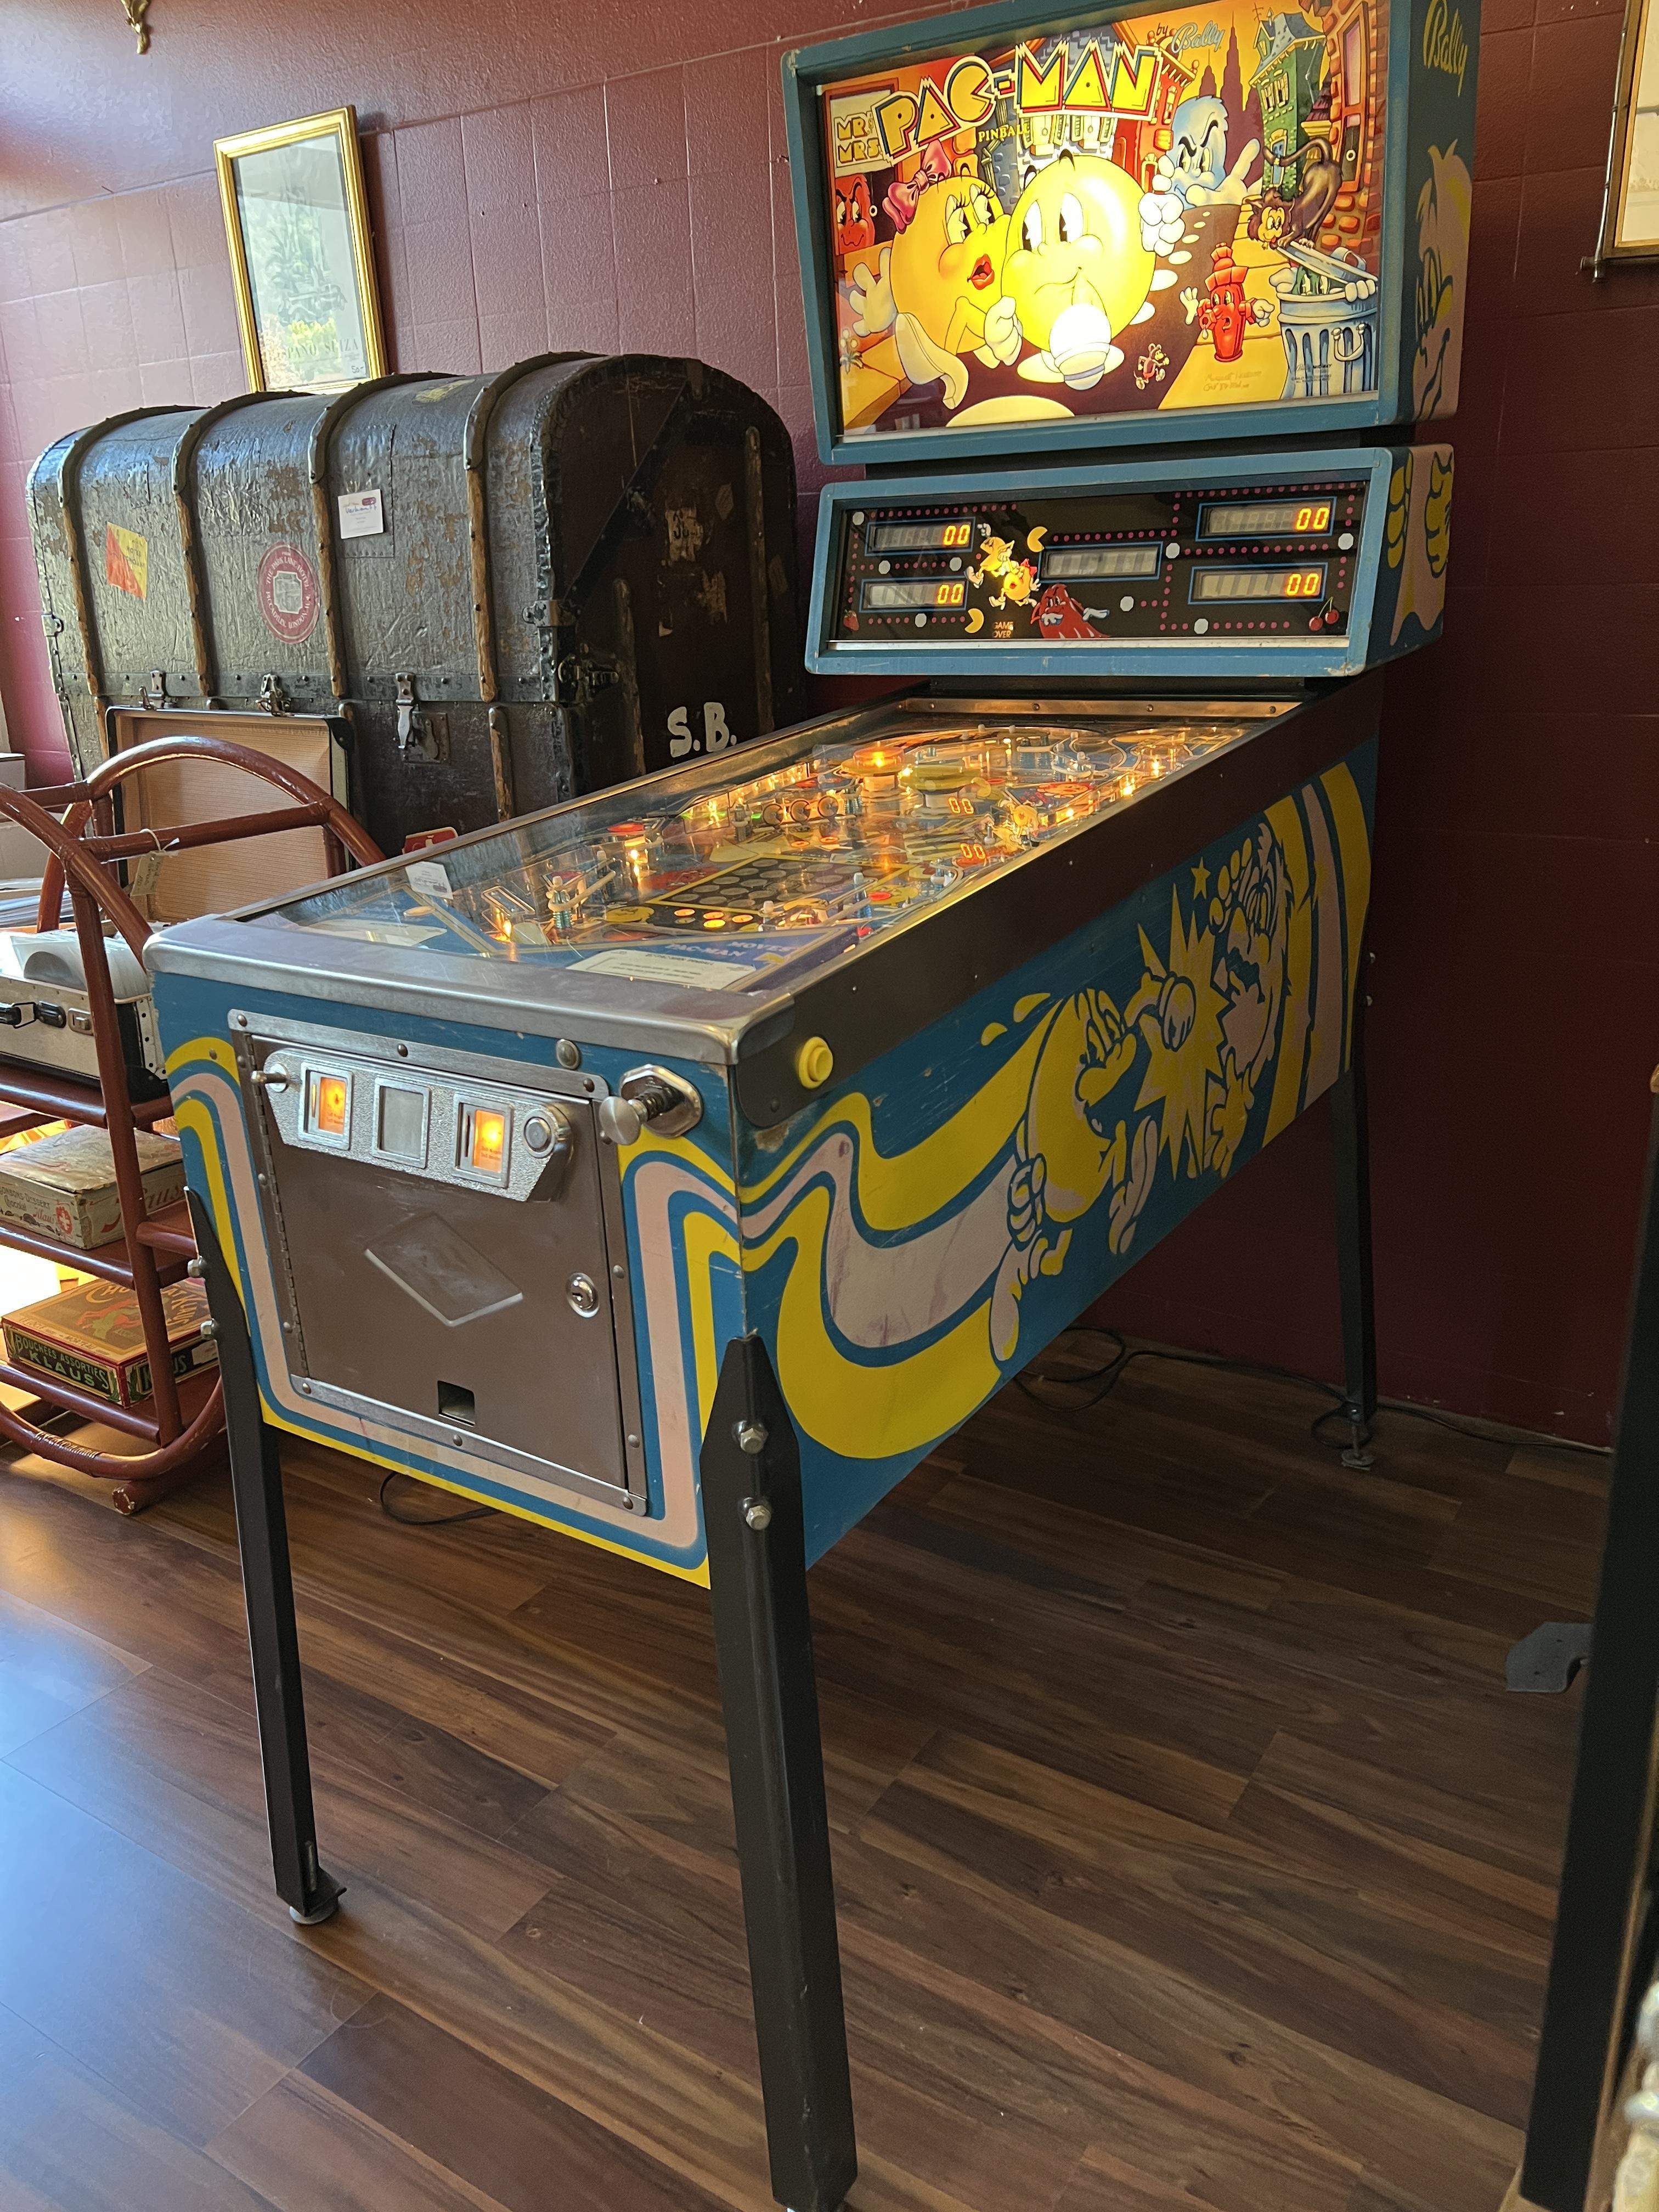 Flipperkasten Pac Man 1982 restauriert